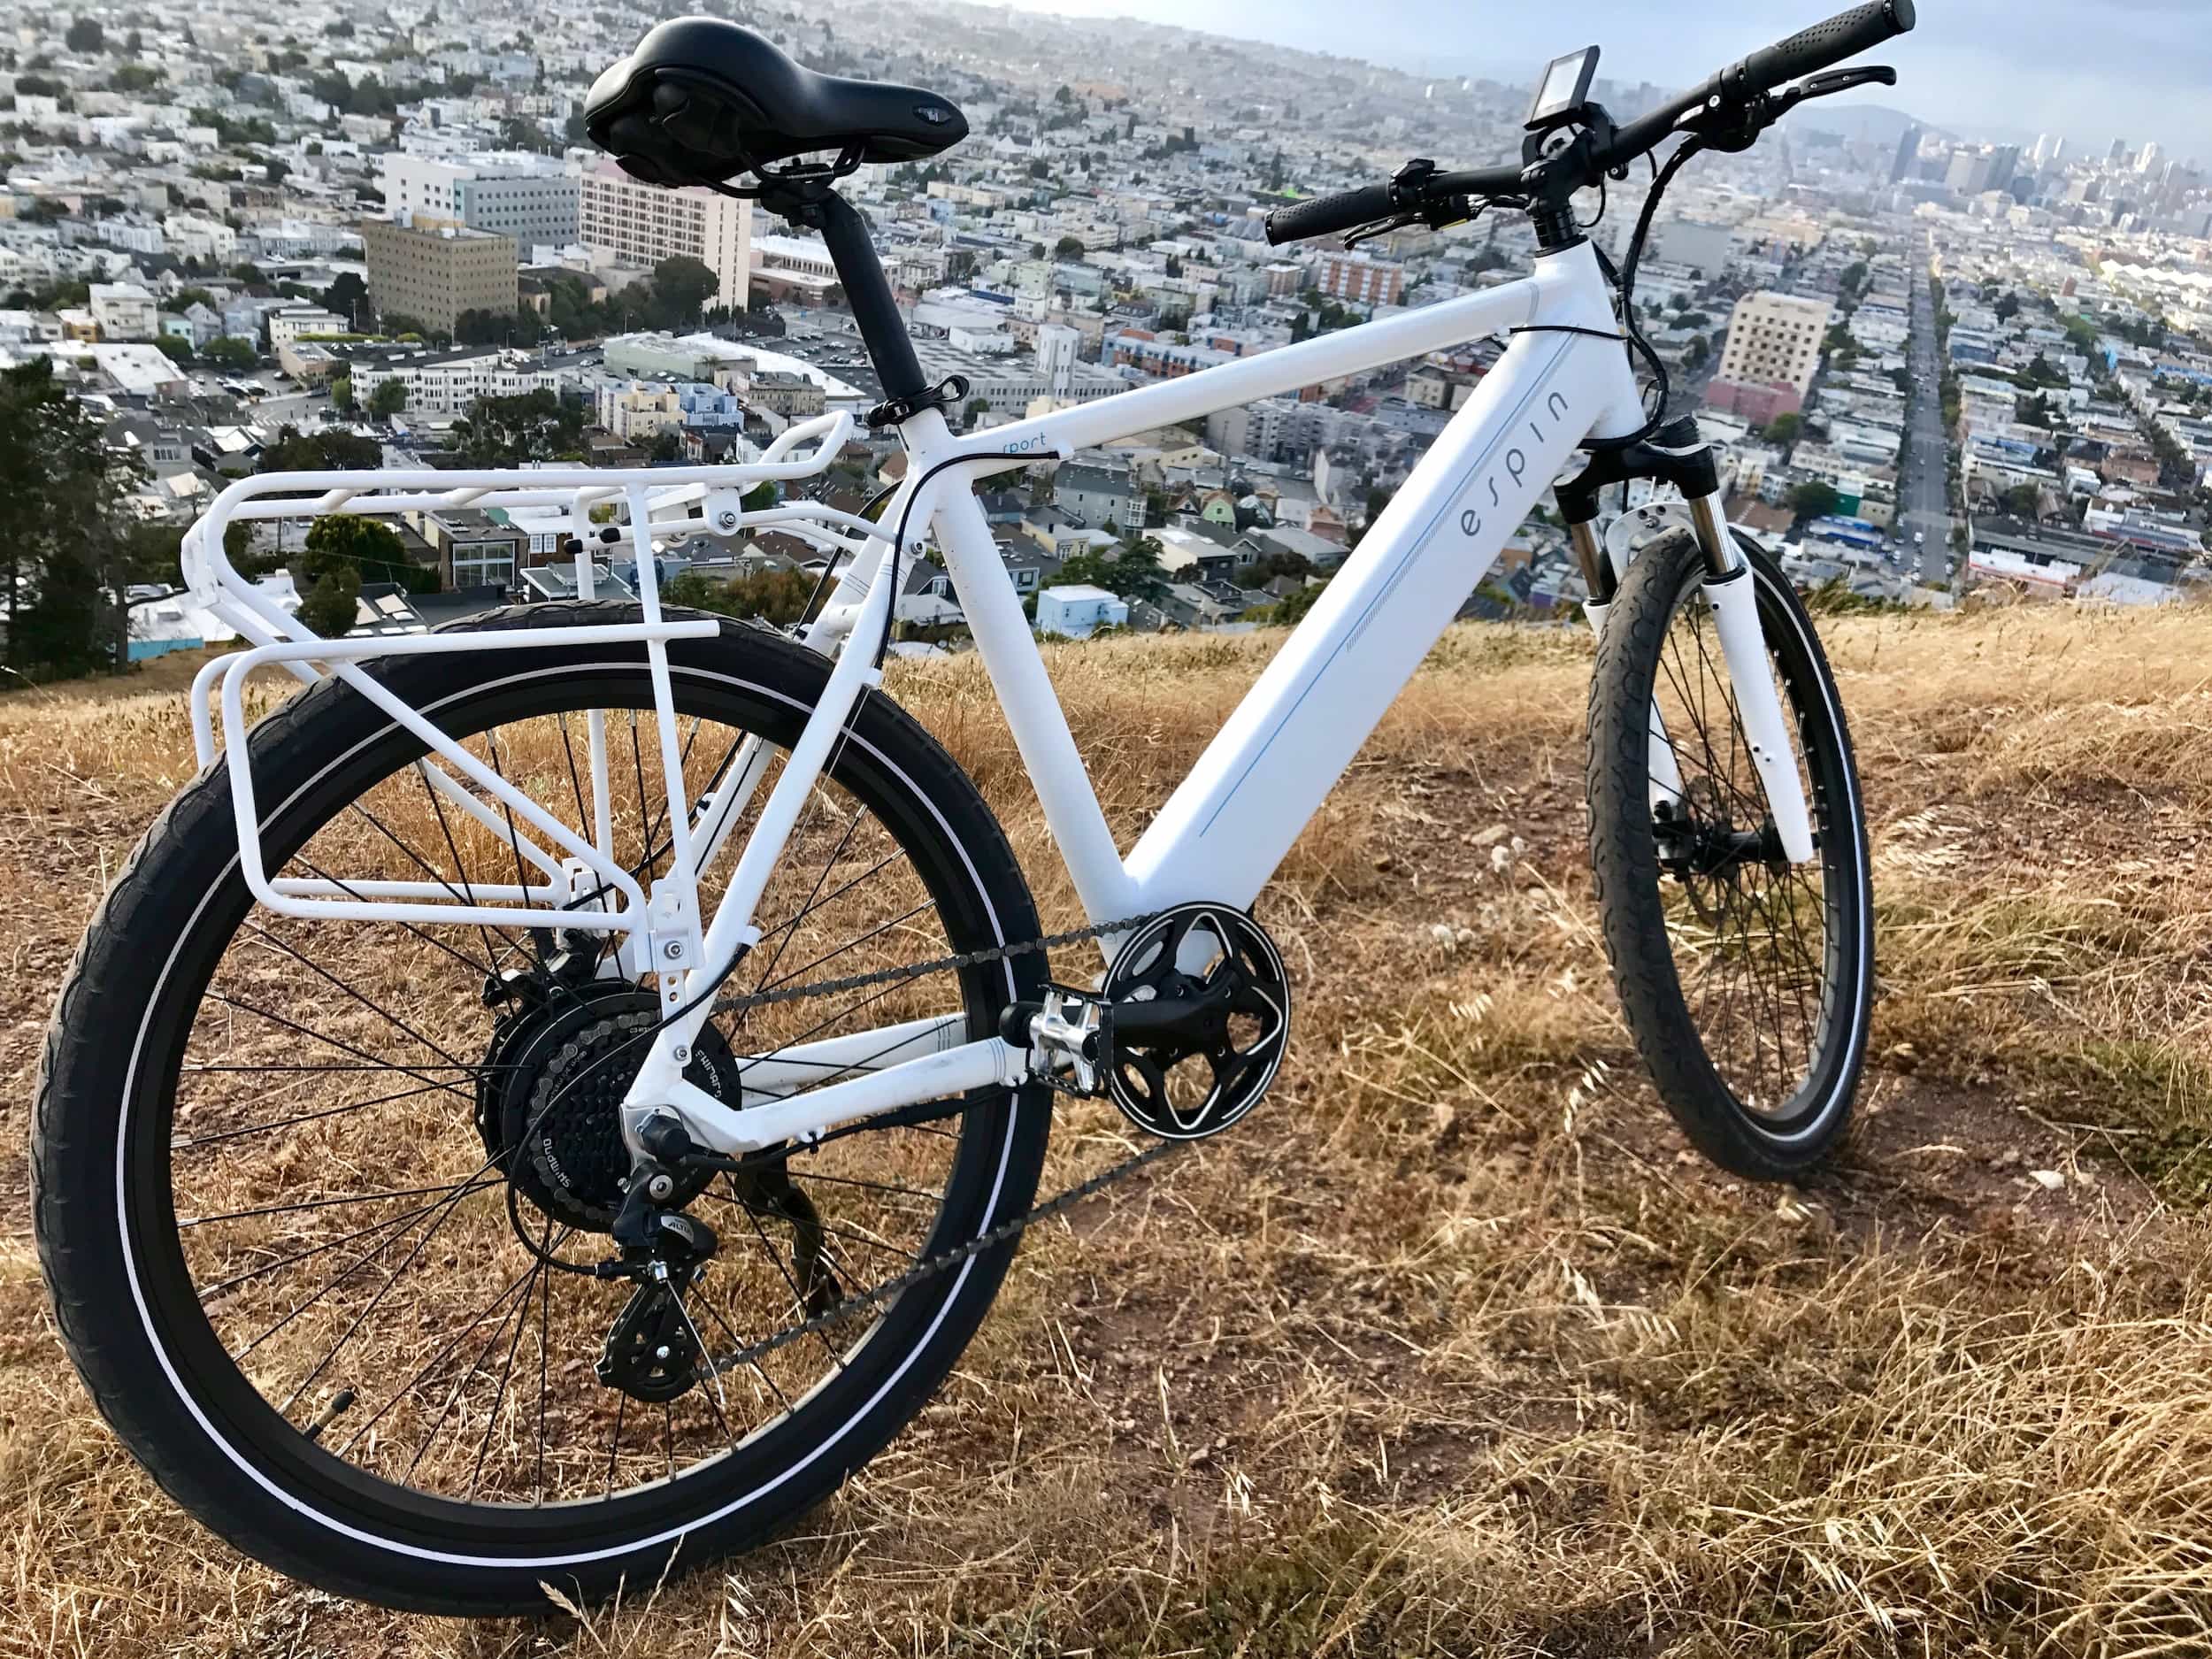 Espin electric bike conquers San Francisco hills